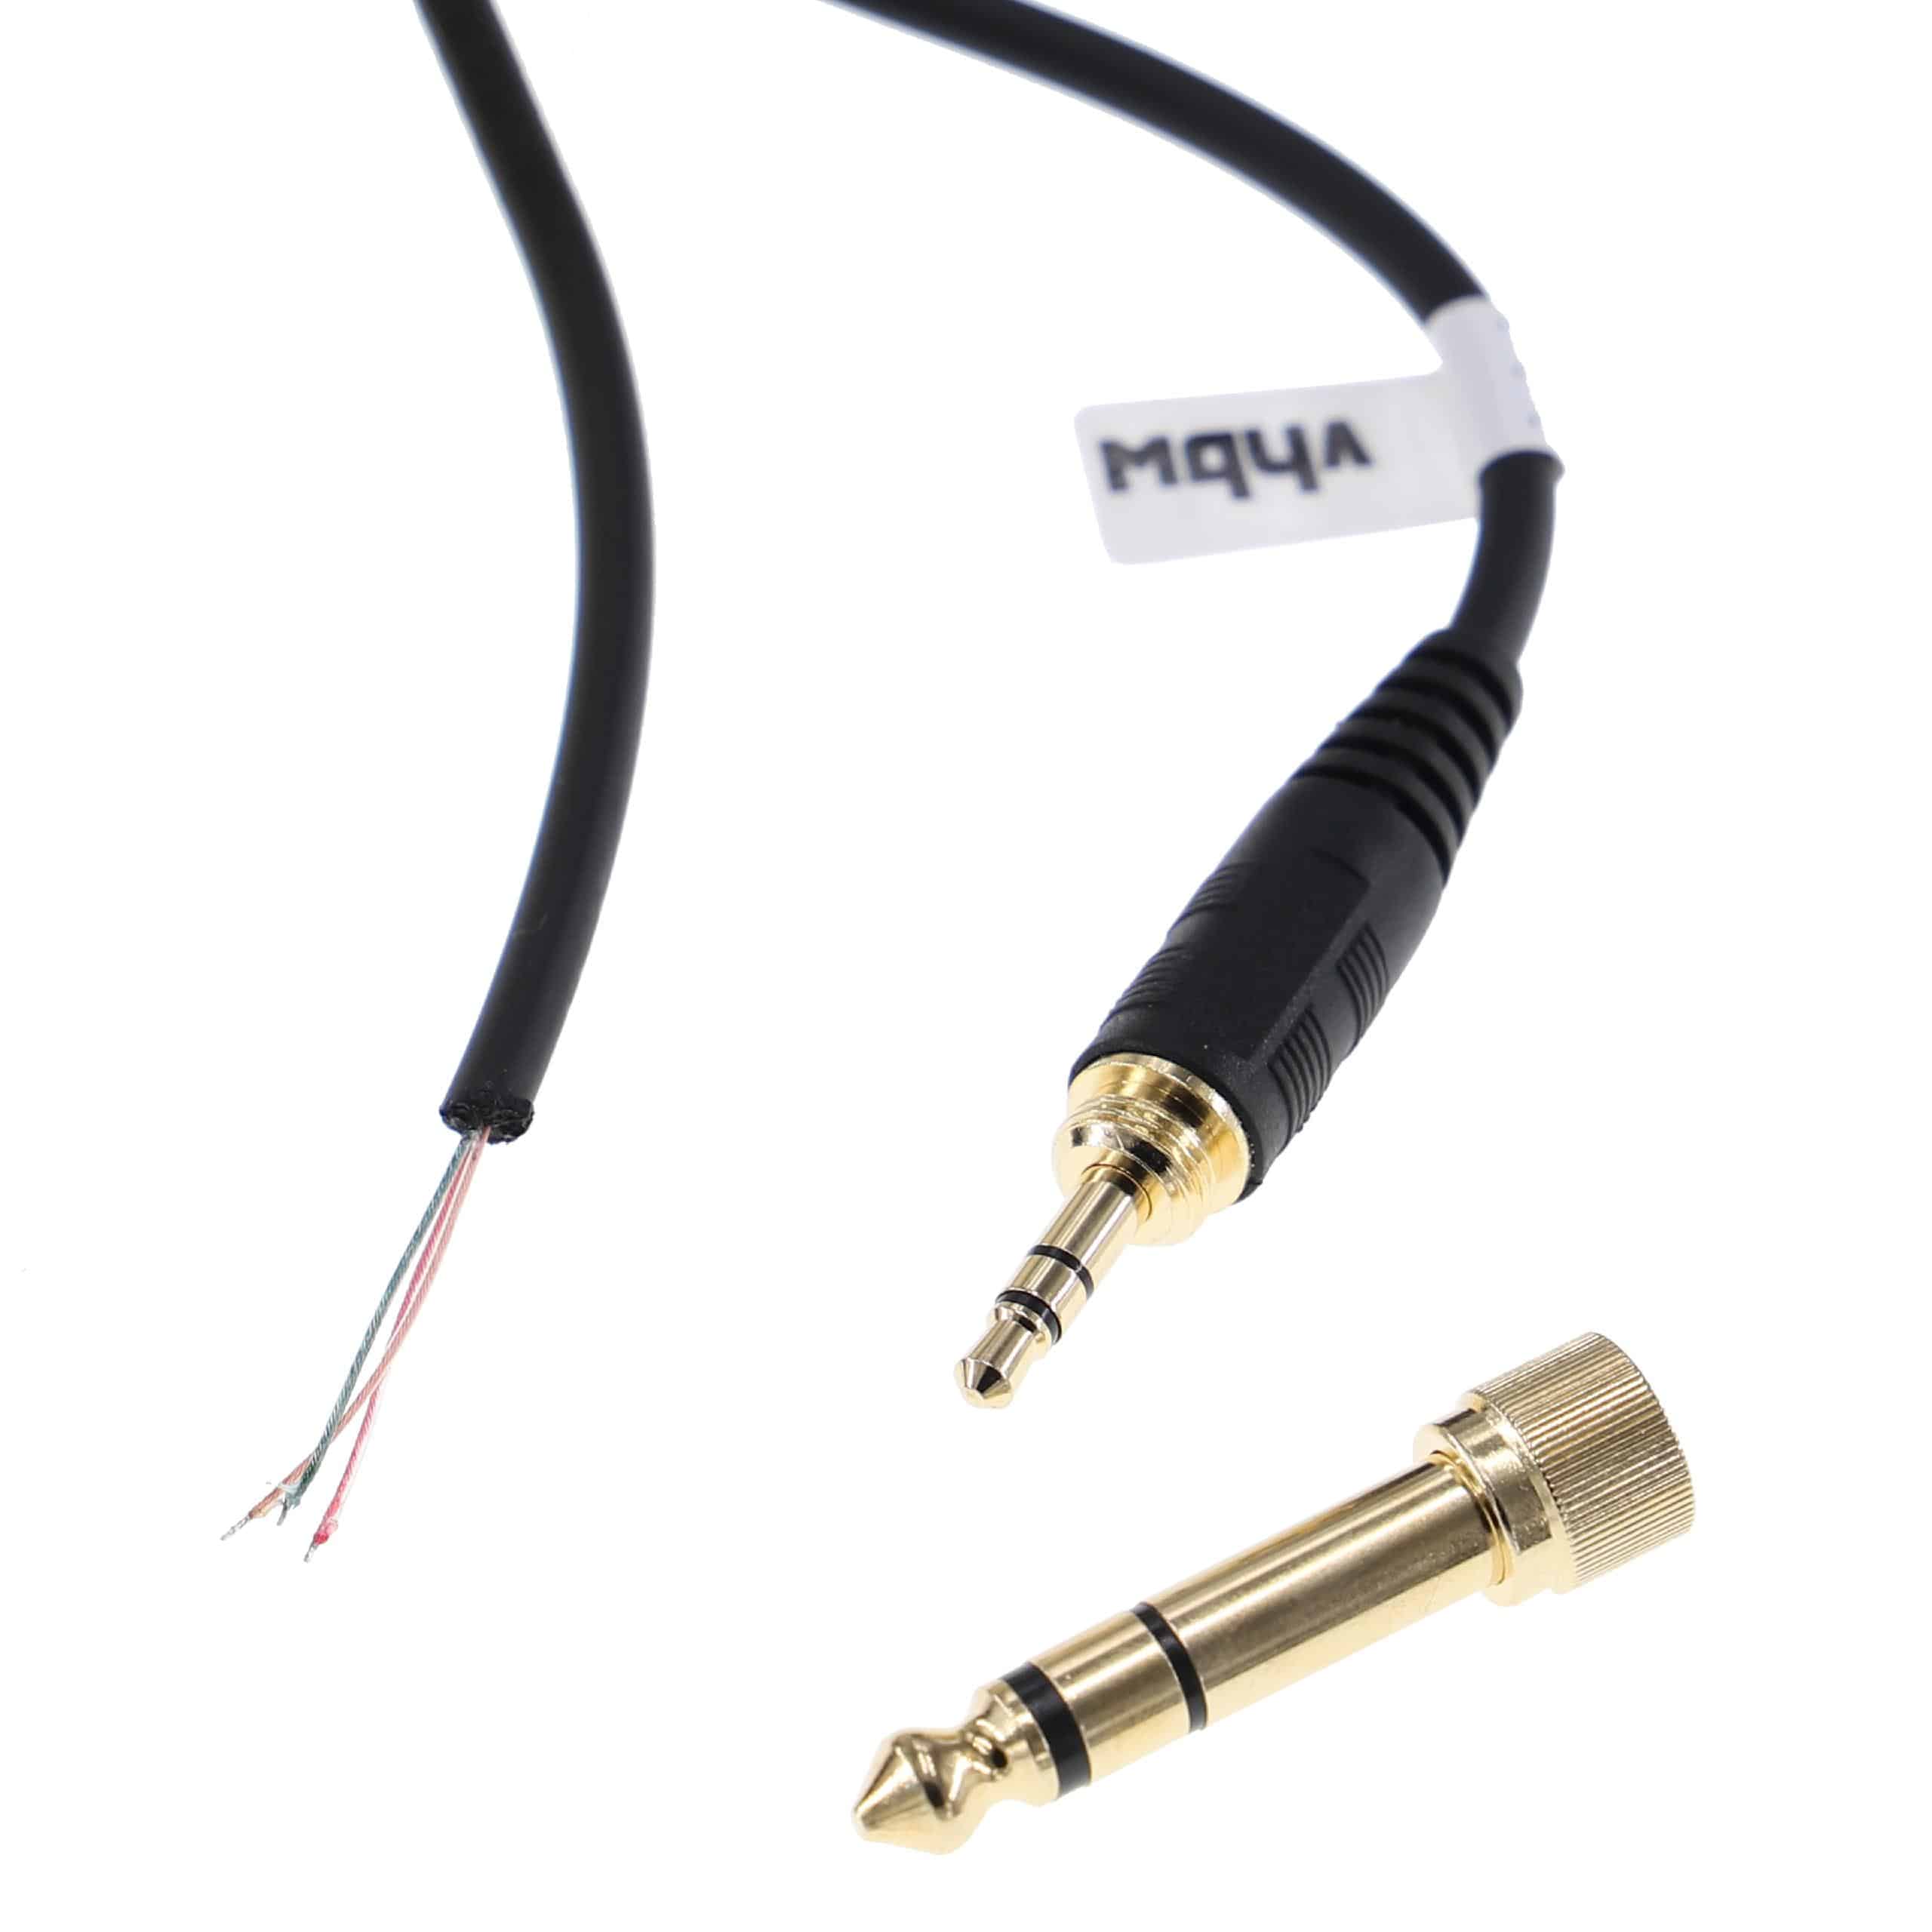 Kopfhörer Kabel passend für Beyerdynamic DT 770, DT 770 Pro, DT 990, DT 990 Pro , 100 - 300 cm, schwarz